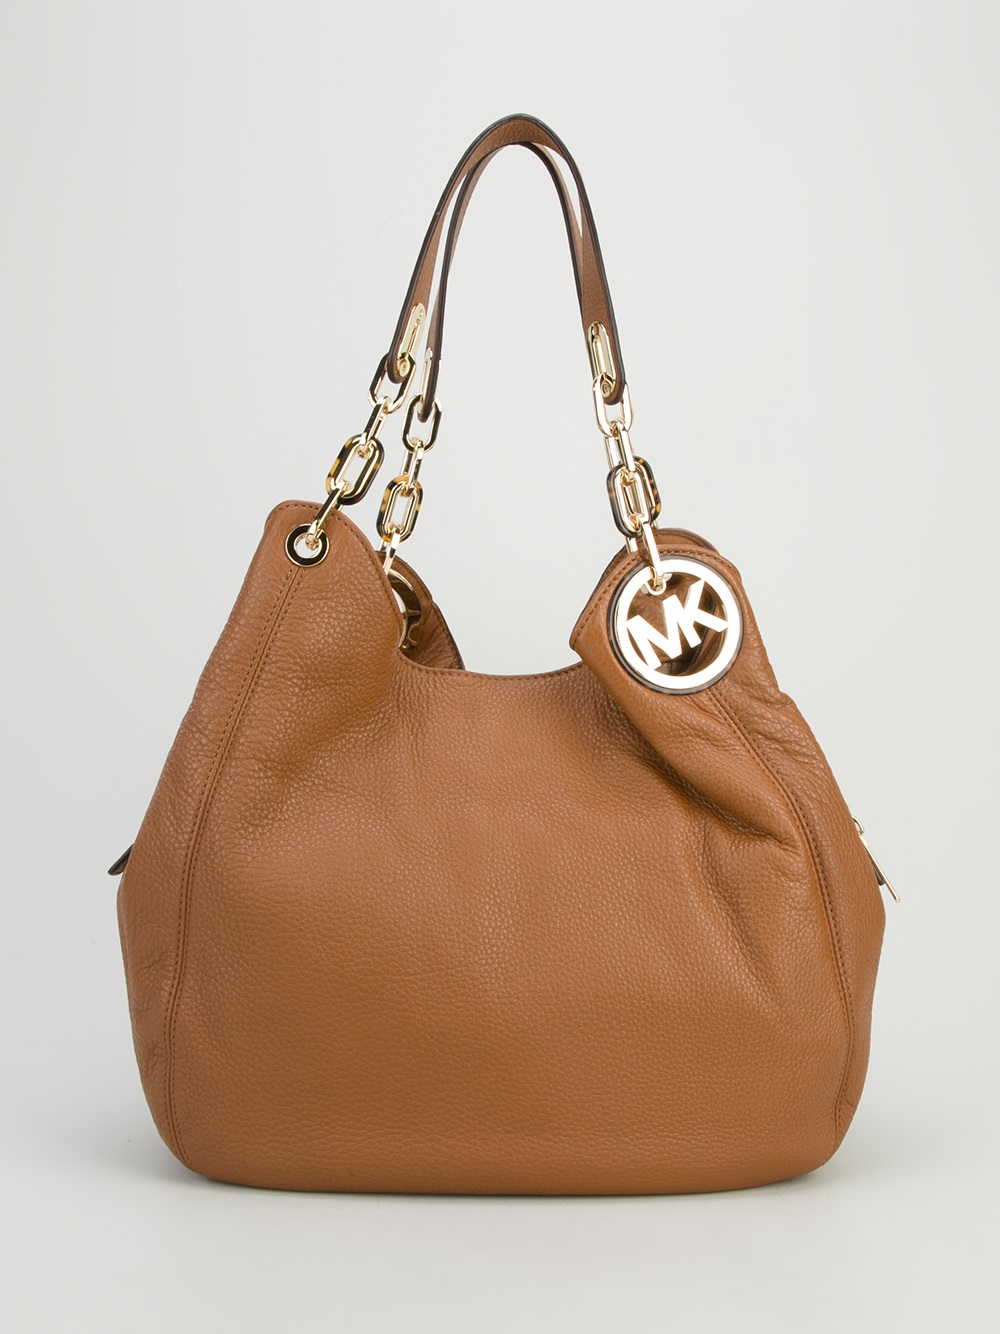 Michael Kors Women's Bag - Brown